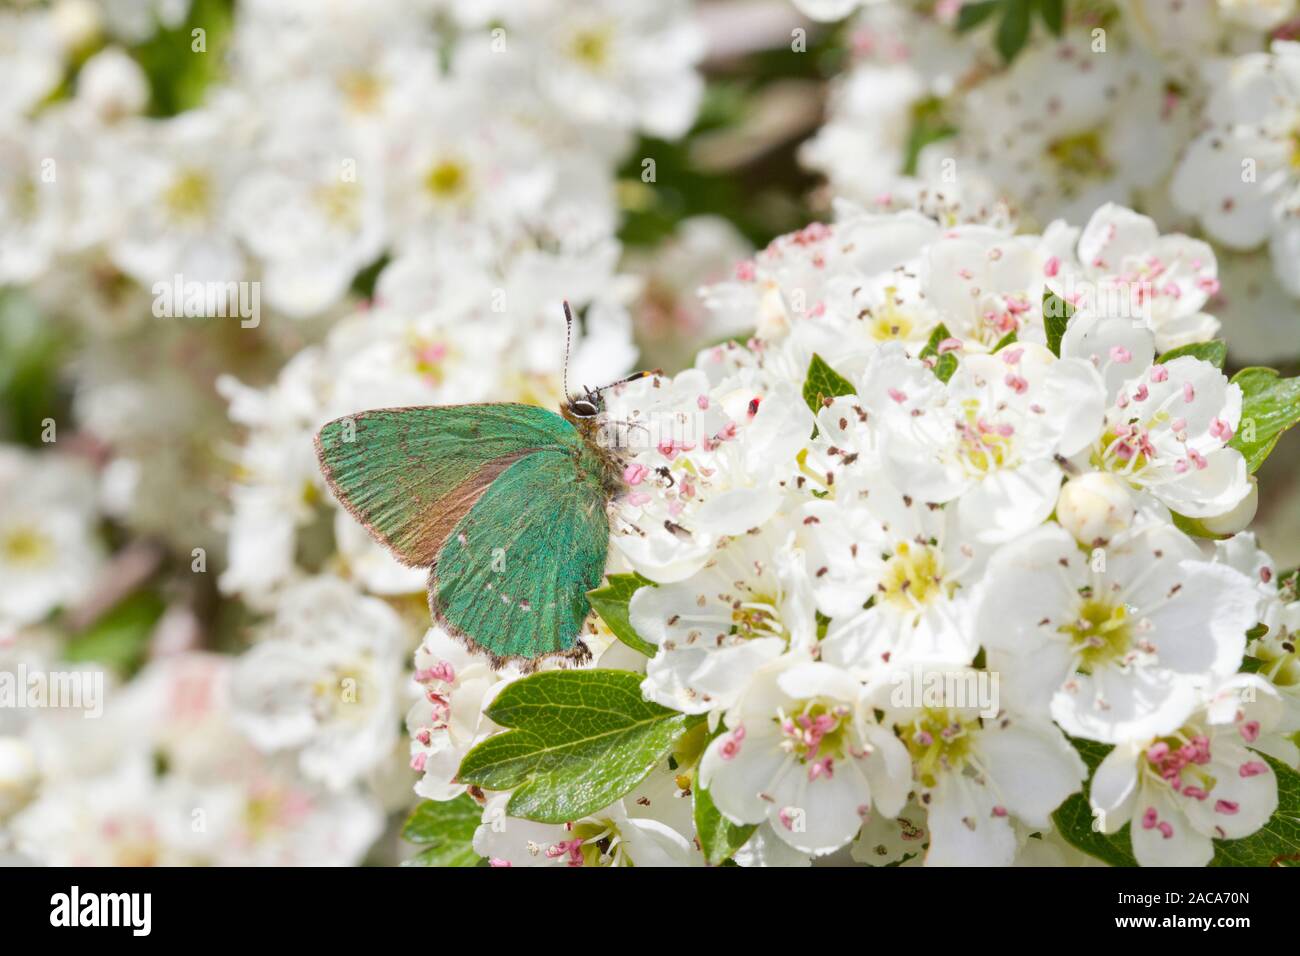 Porte-queue vert (Callophrys rubi) papillon adulte se nourrit de l'aubépine (Crataegus sp.) s'épanouir. Powys, Pays de Galles. Mai. Banque D'Images